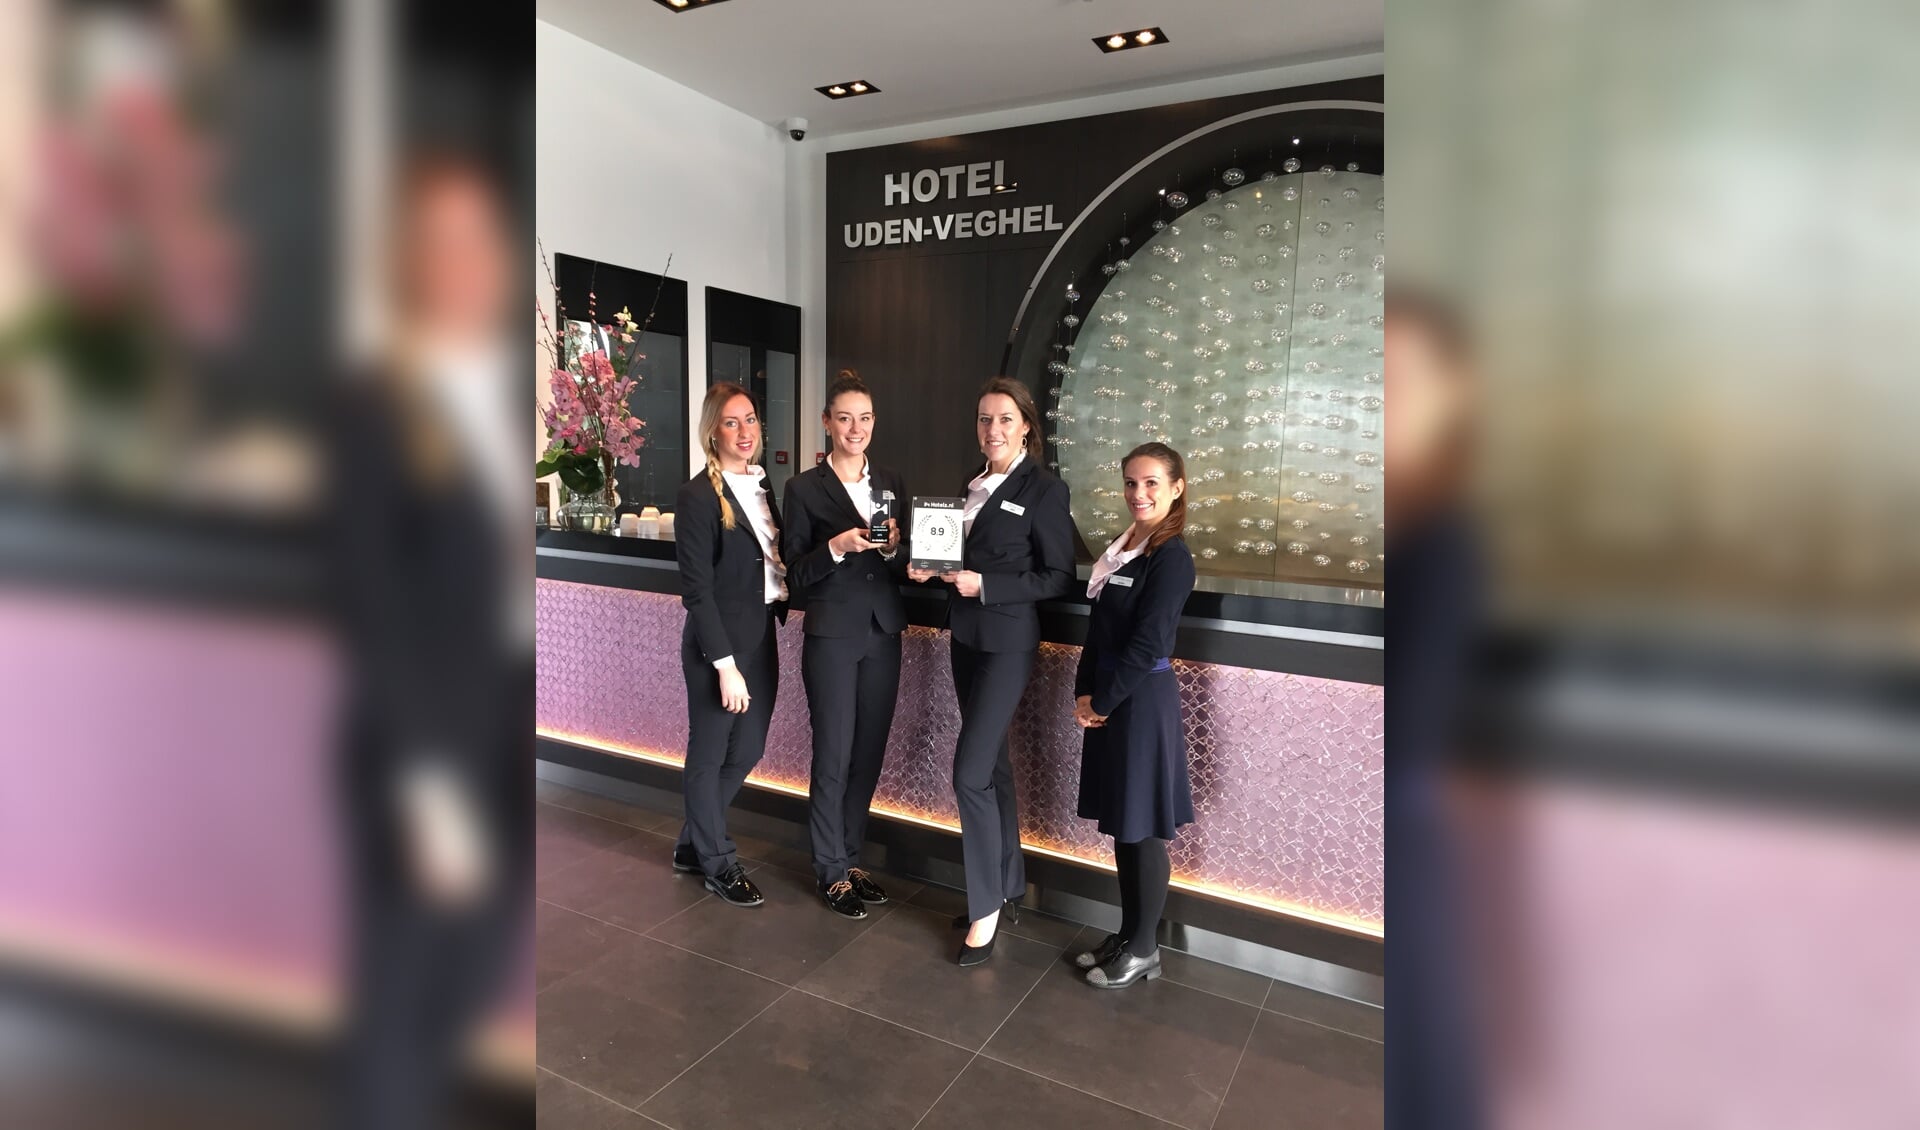 V.l.n.r. Amber Kuin (groepsreserveringen), Emma Notenboom (Front Office Manager), Aniek van Vugt (Sales Manager), Desni van den Broek (receptionist).